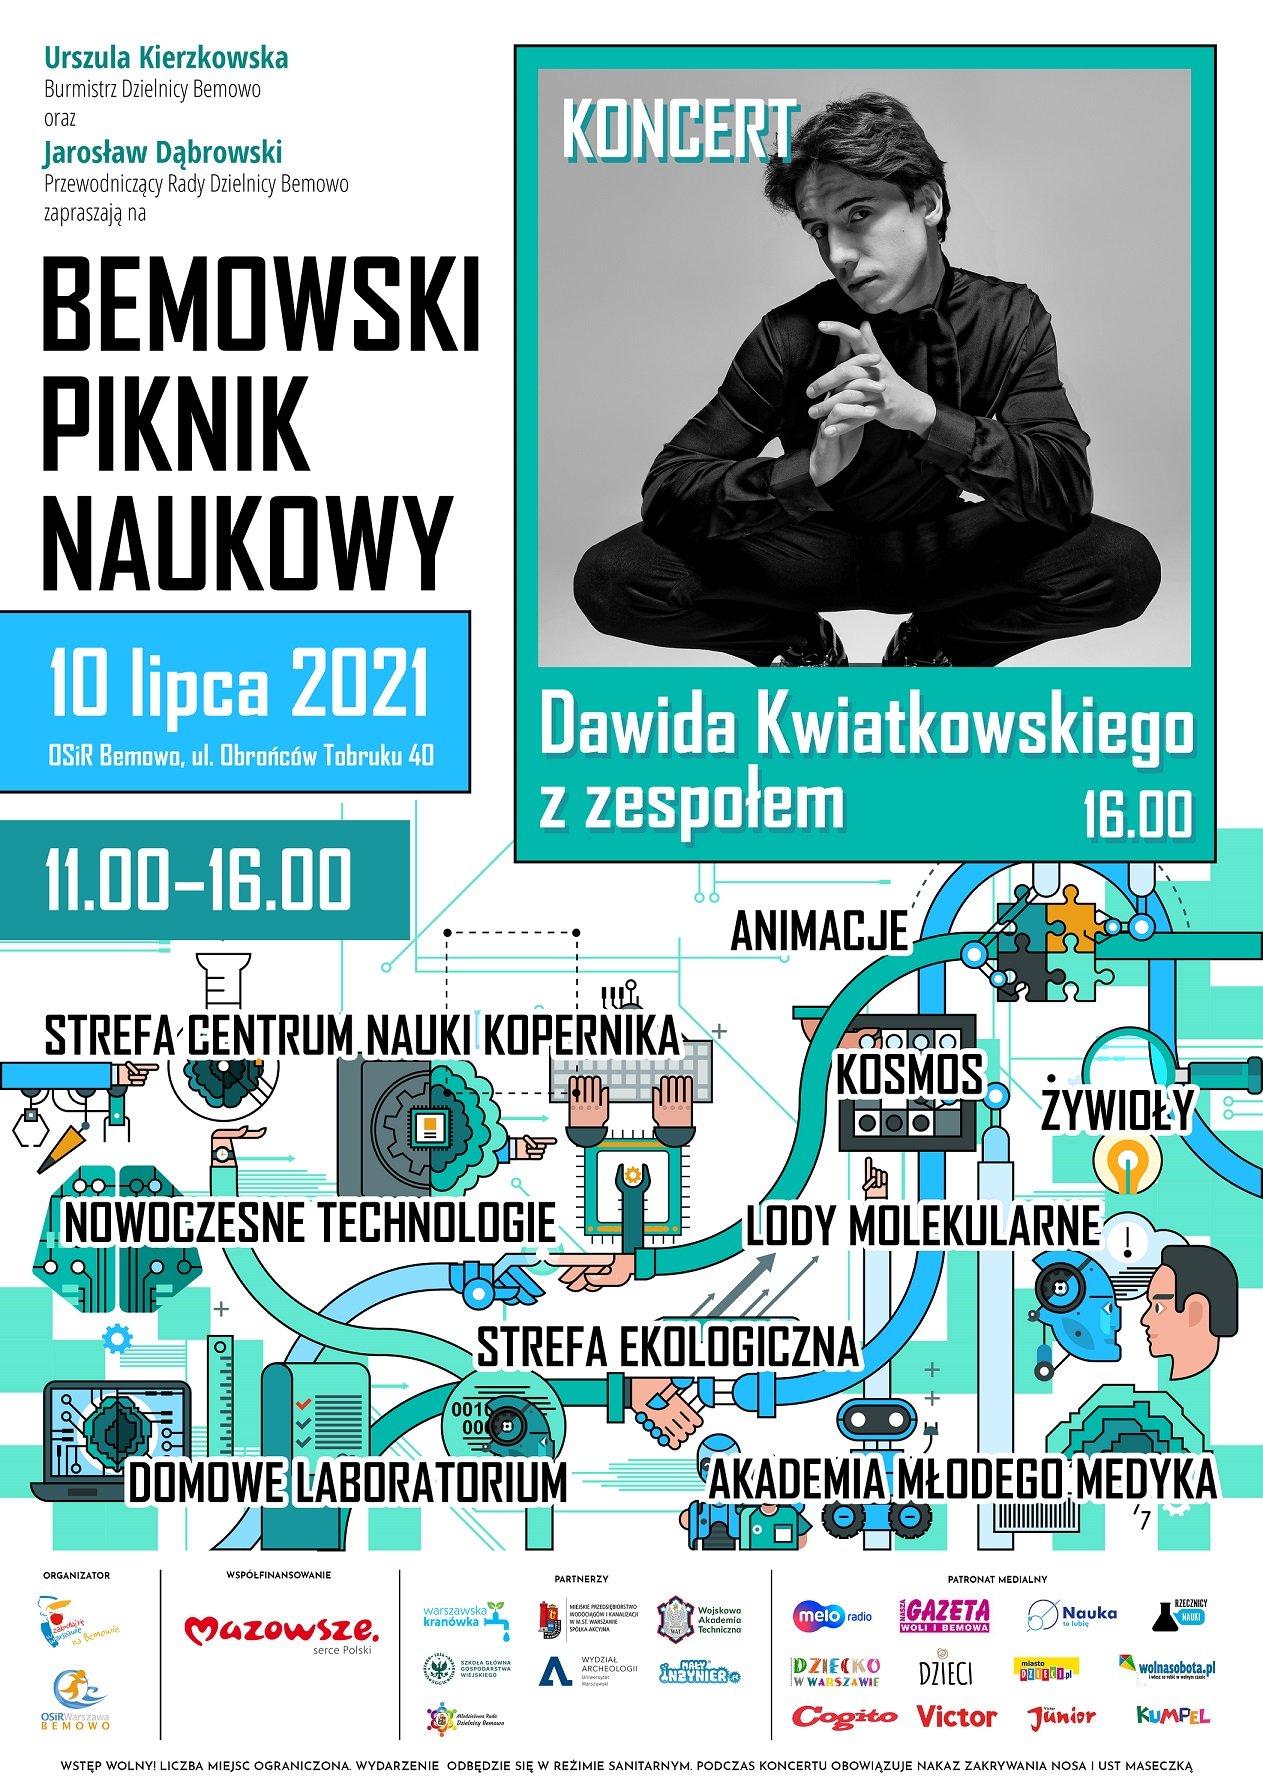 Bemowski Piknik Naukowy i koncert Dawida Kwiatkowskiego